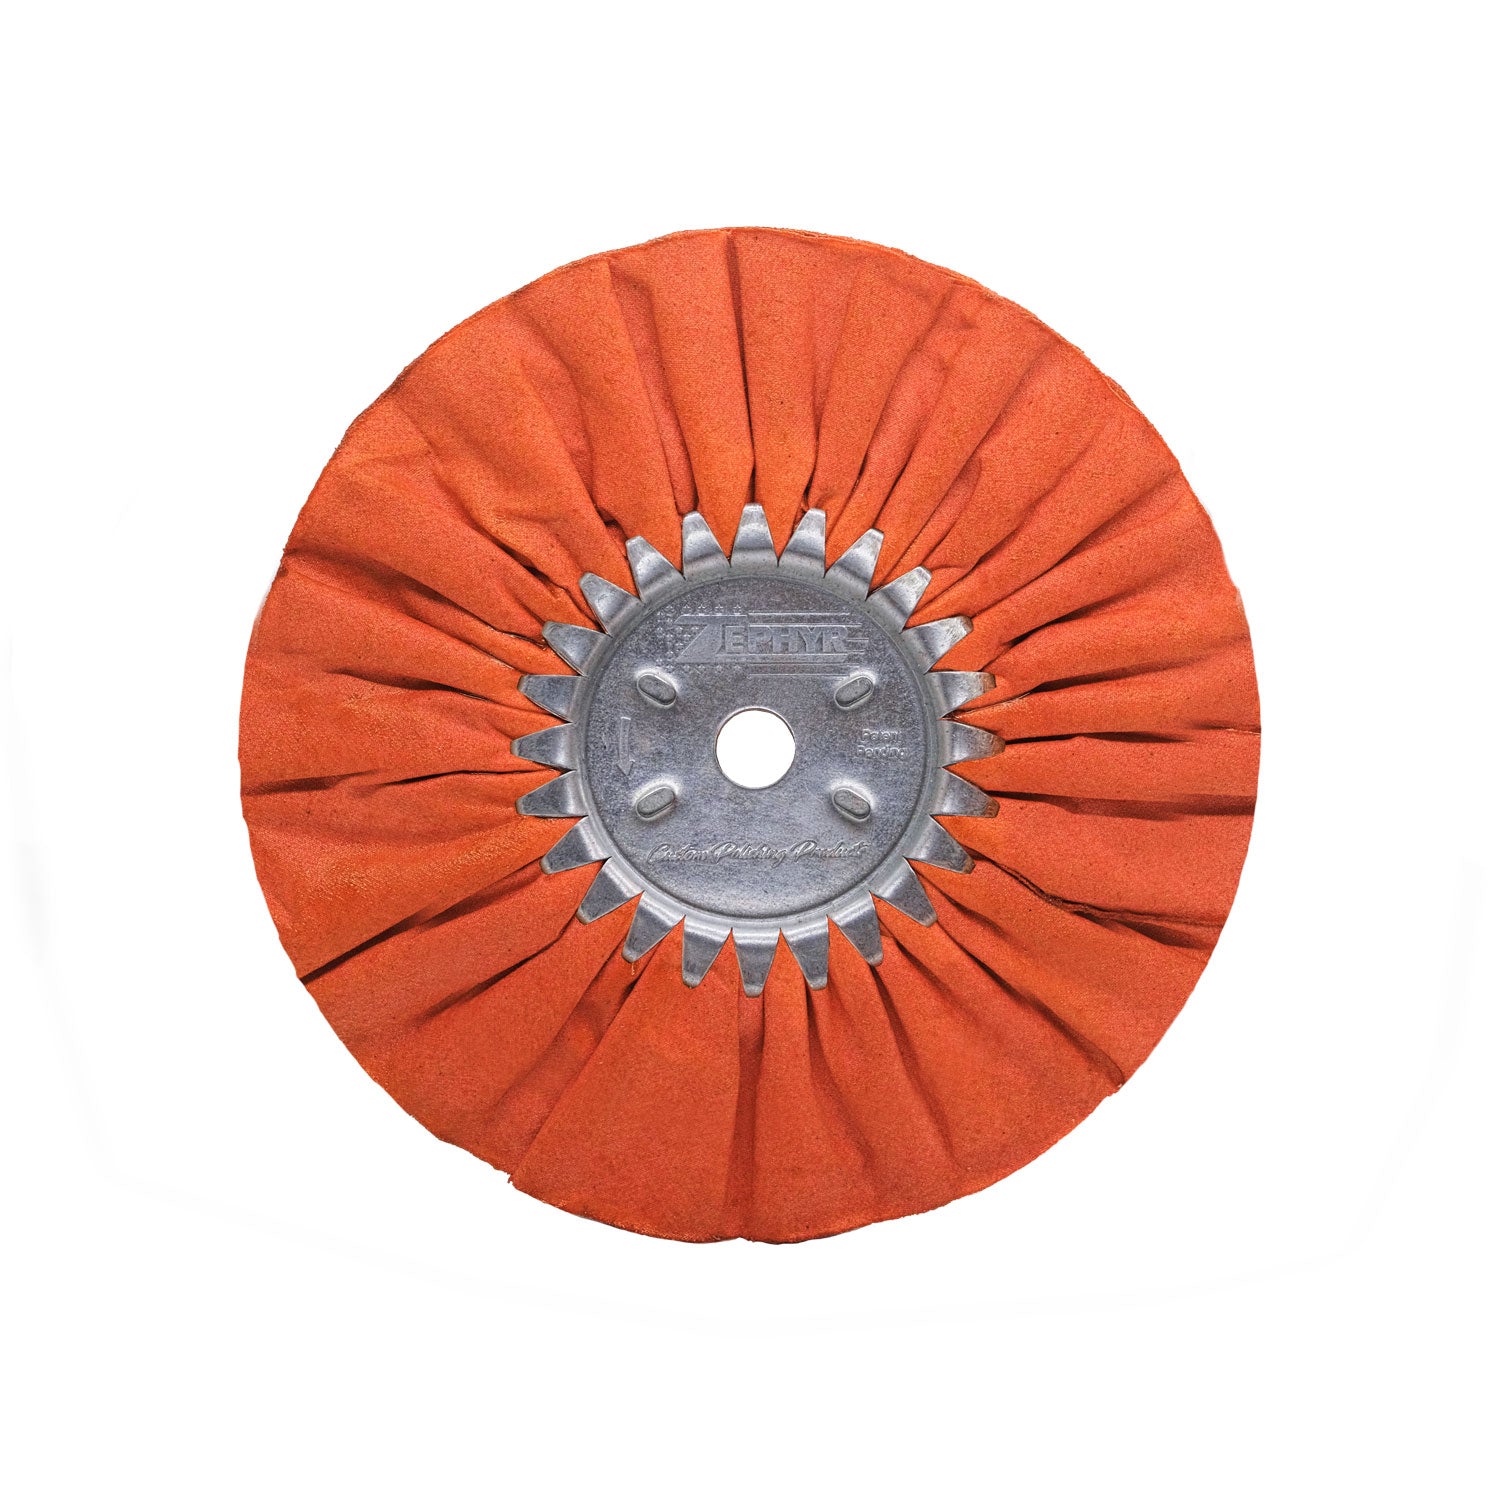 Zephyr Orange Ruffy Clear Dip Airway Buffing Wheel Heavy Polishing Step